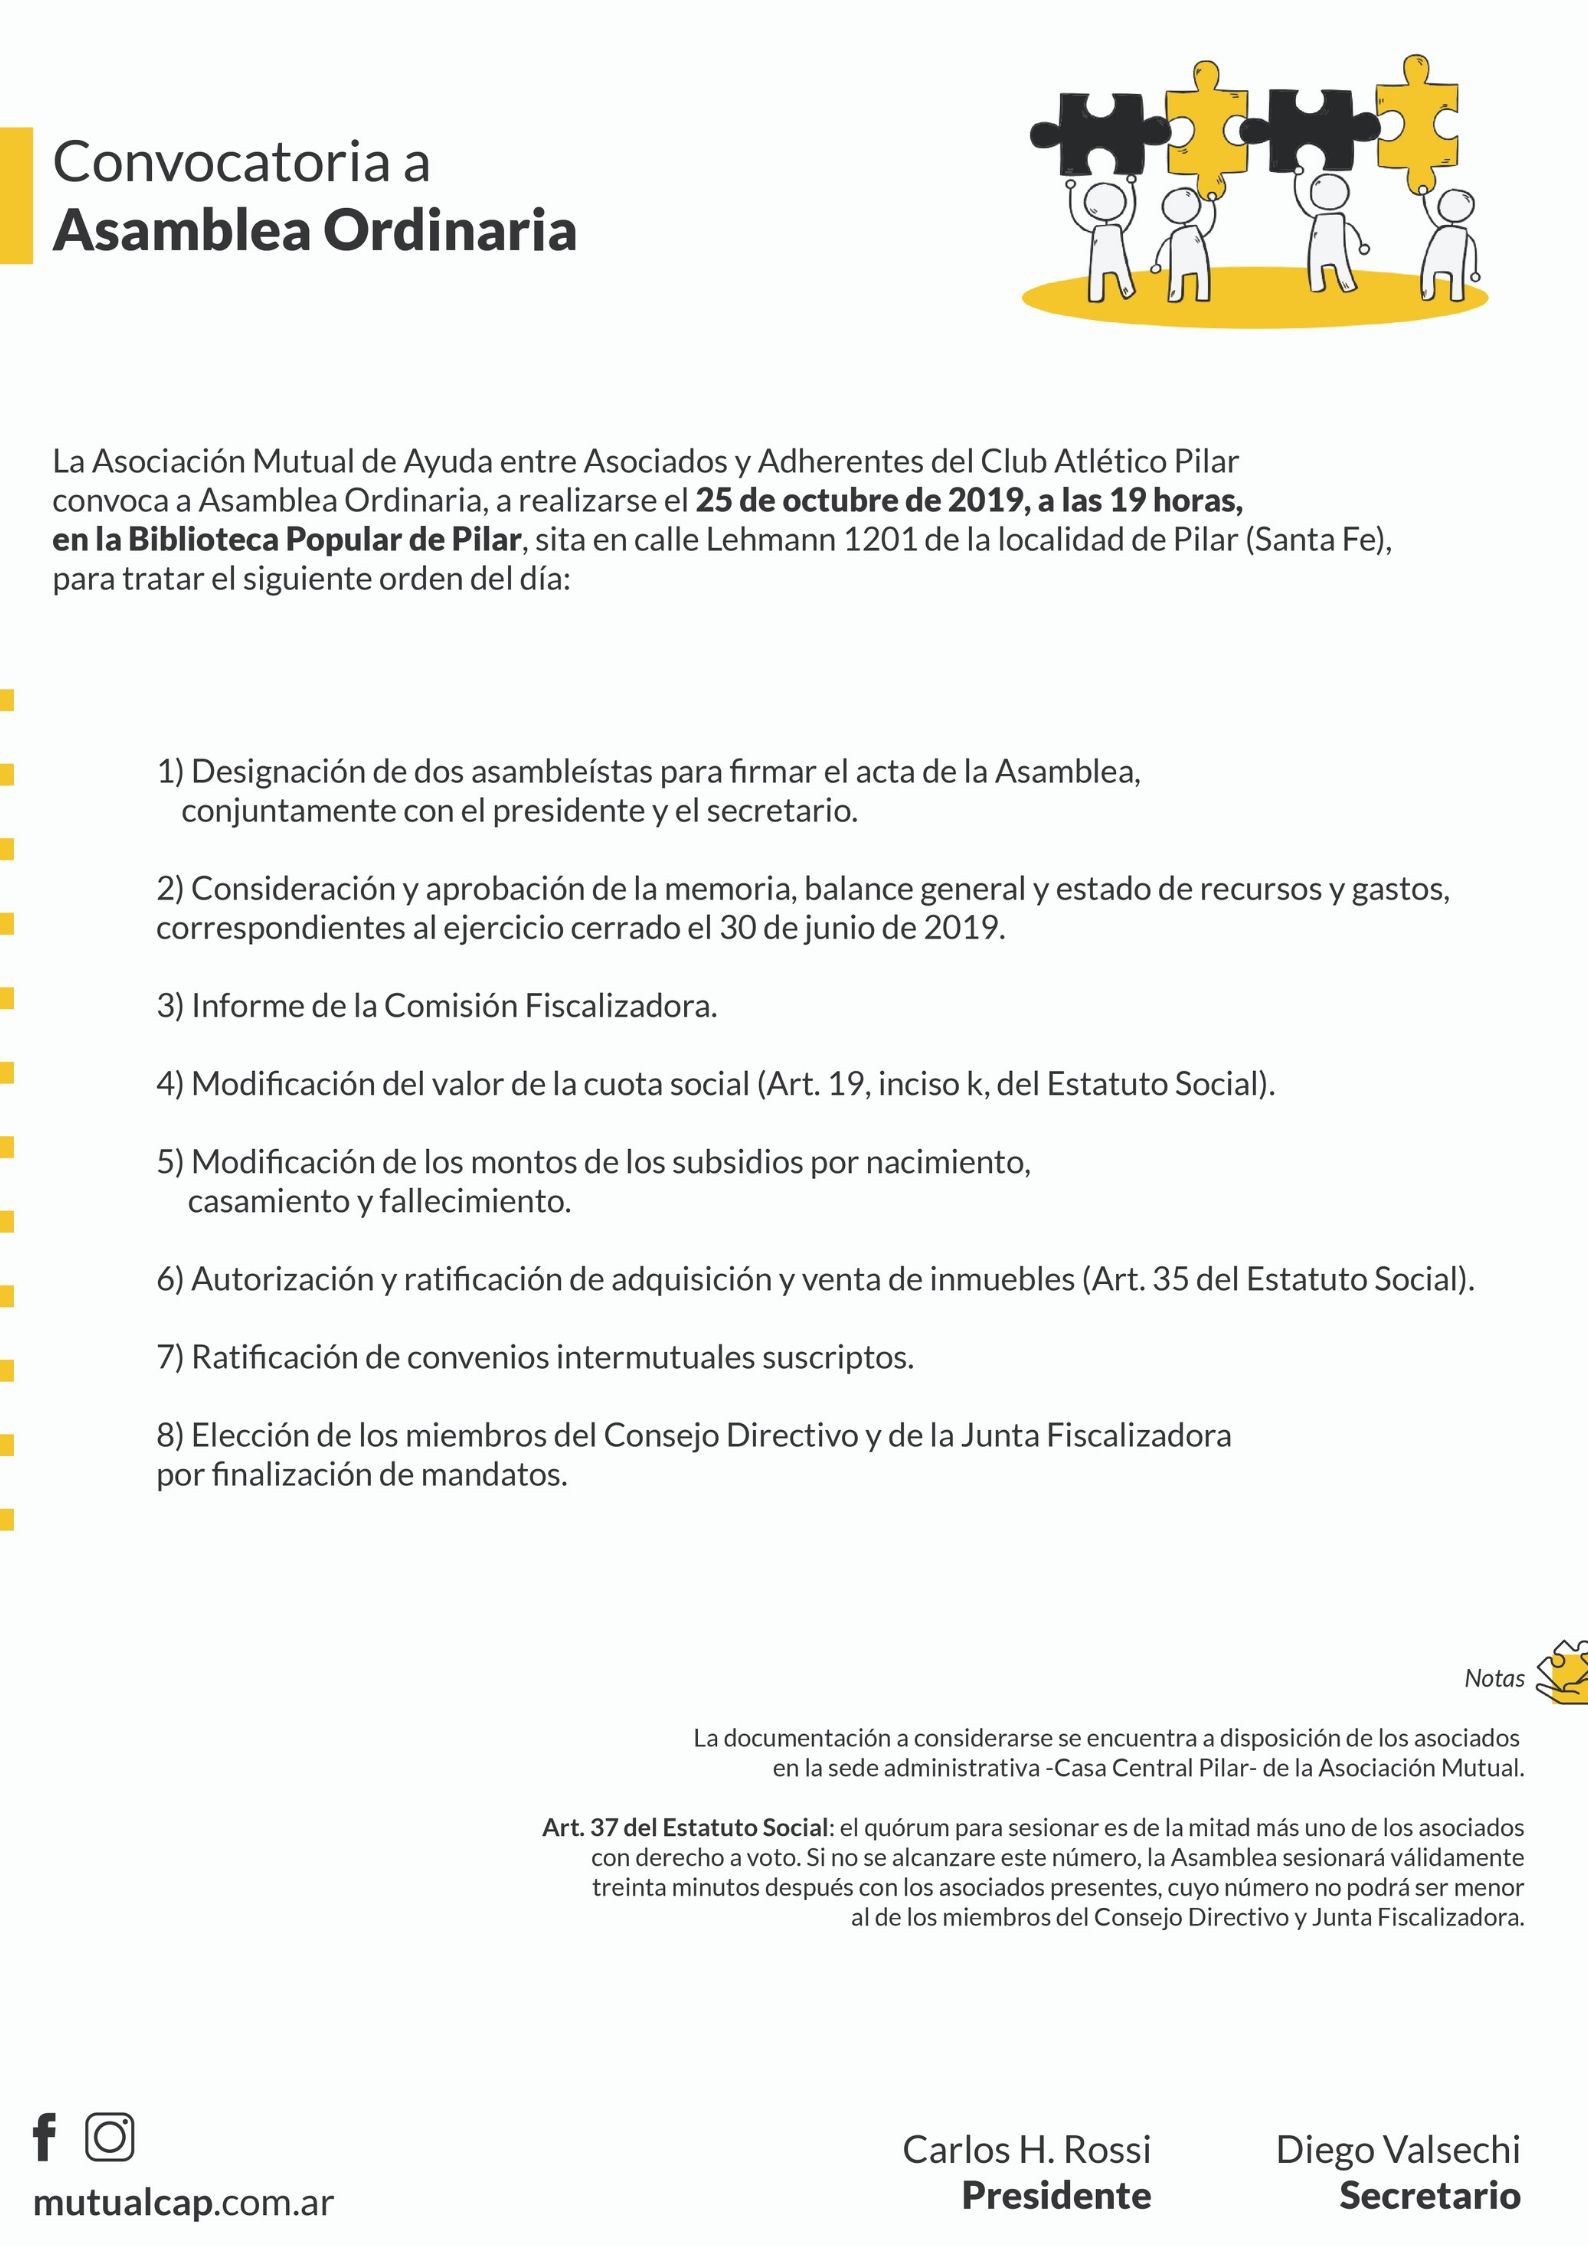 Convocatoria Asamblea General Ordinaria - Mutual del Club Atlético Pilar - Página web oficial de la Mutual del C.A.P.